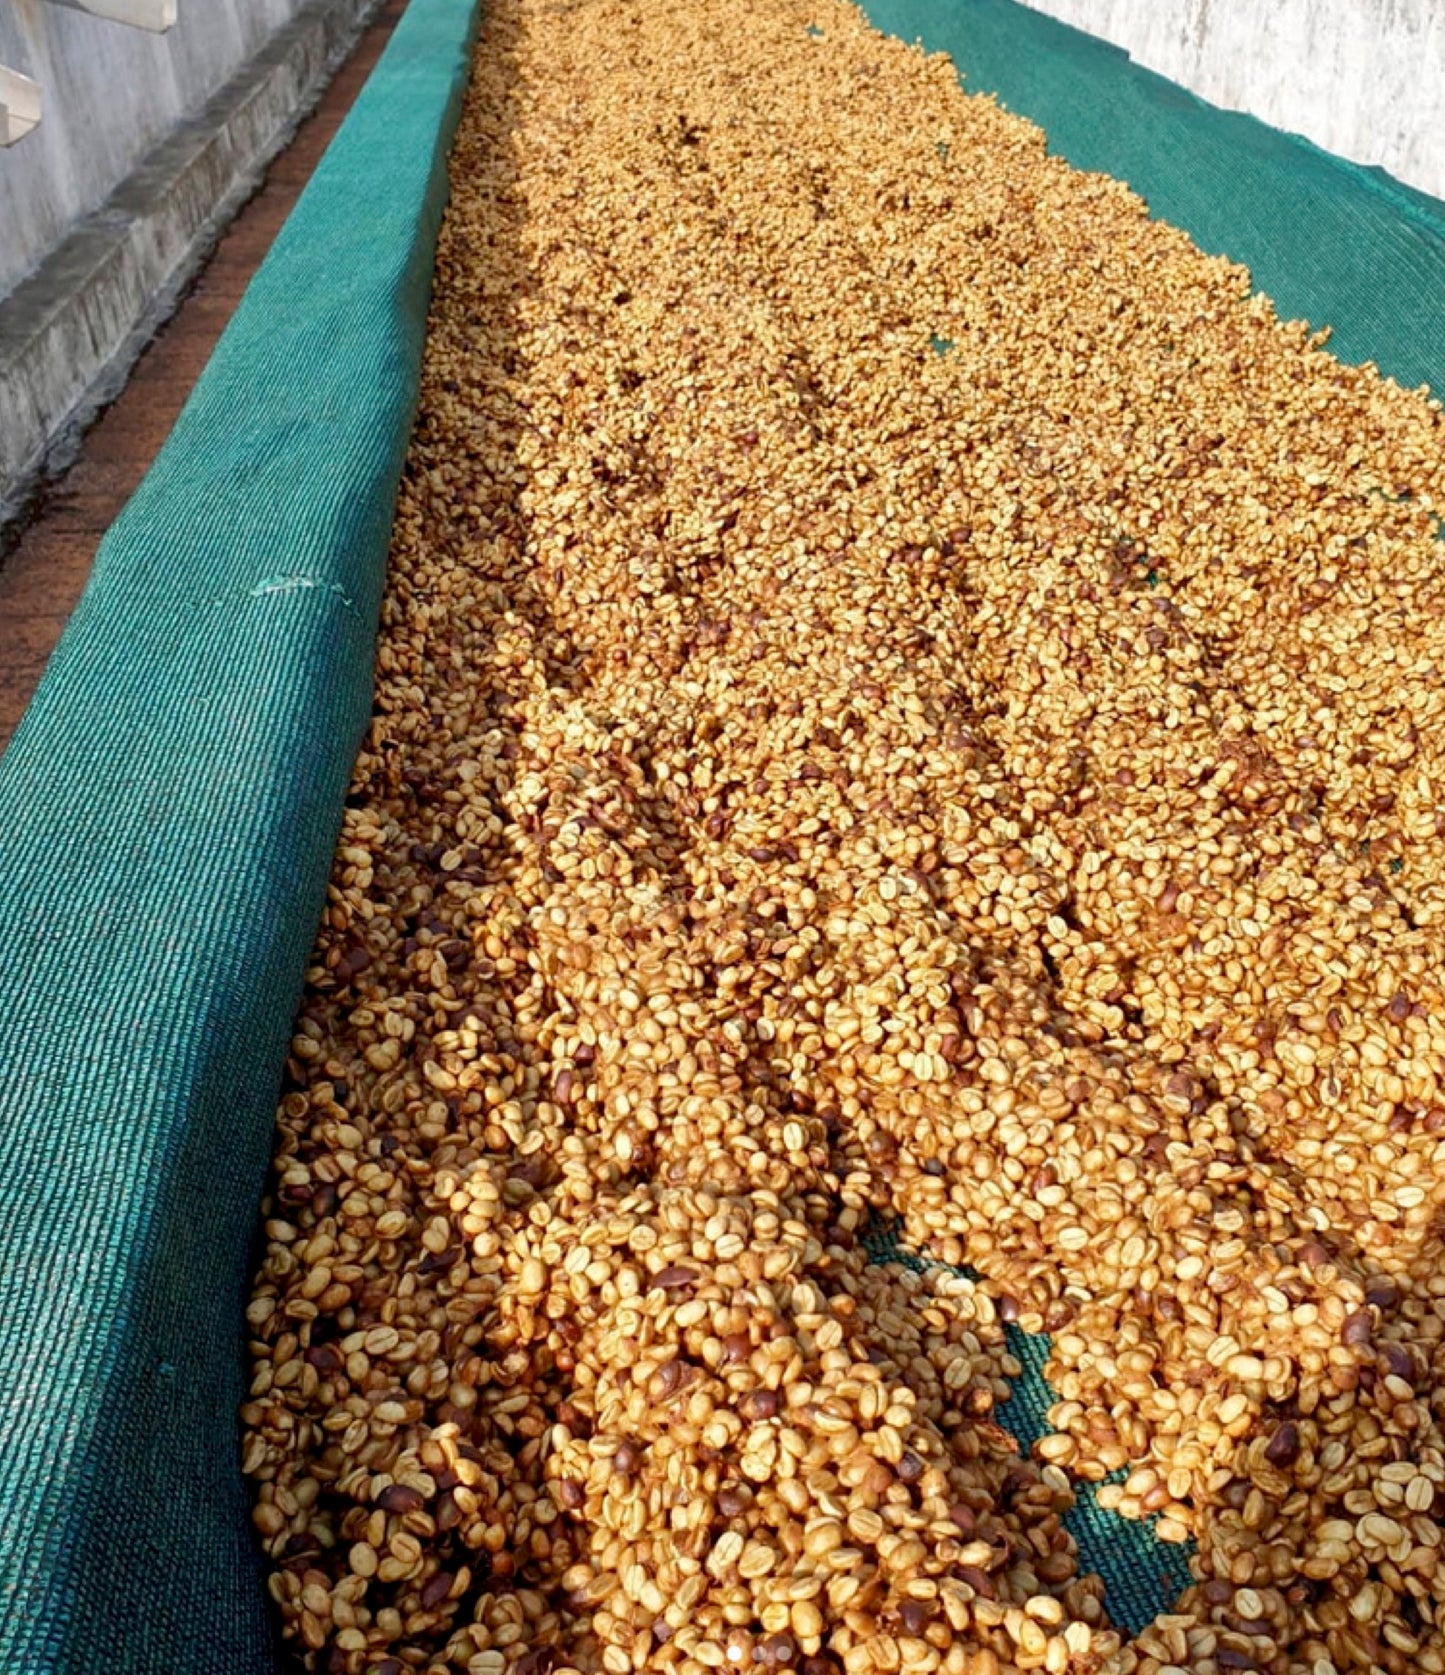 Honey Processing At Boothangudi Estate